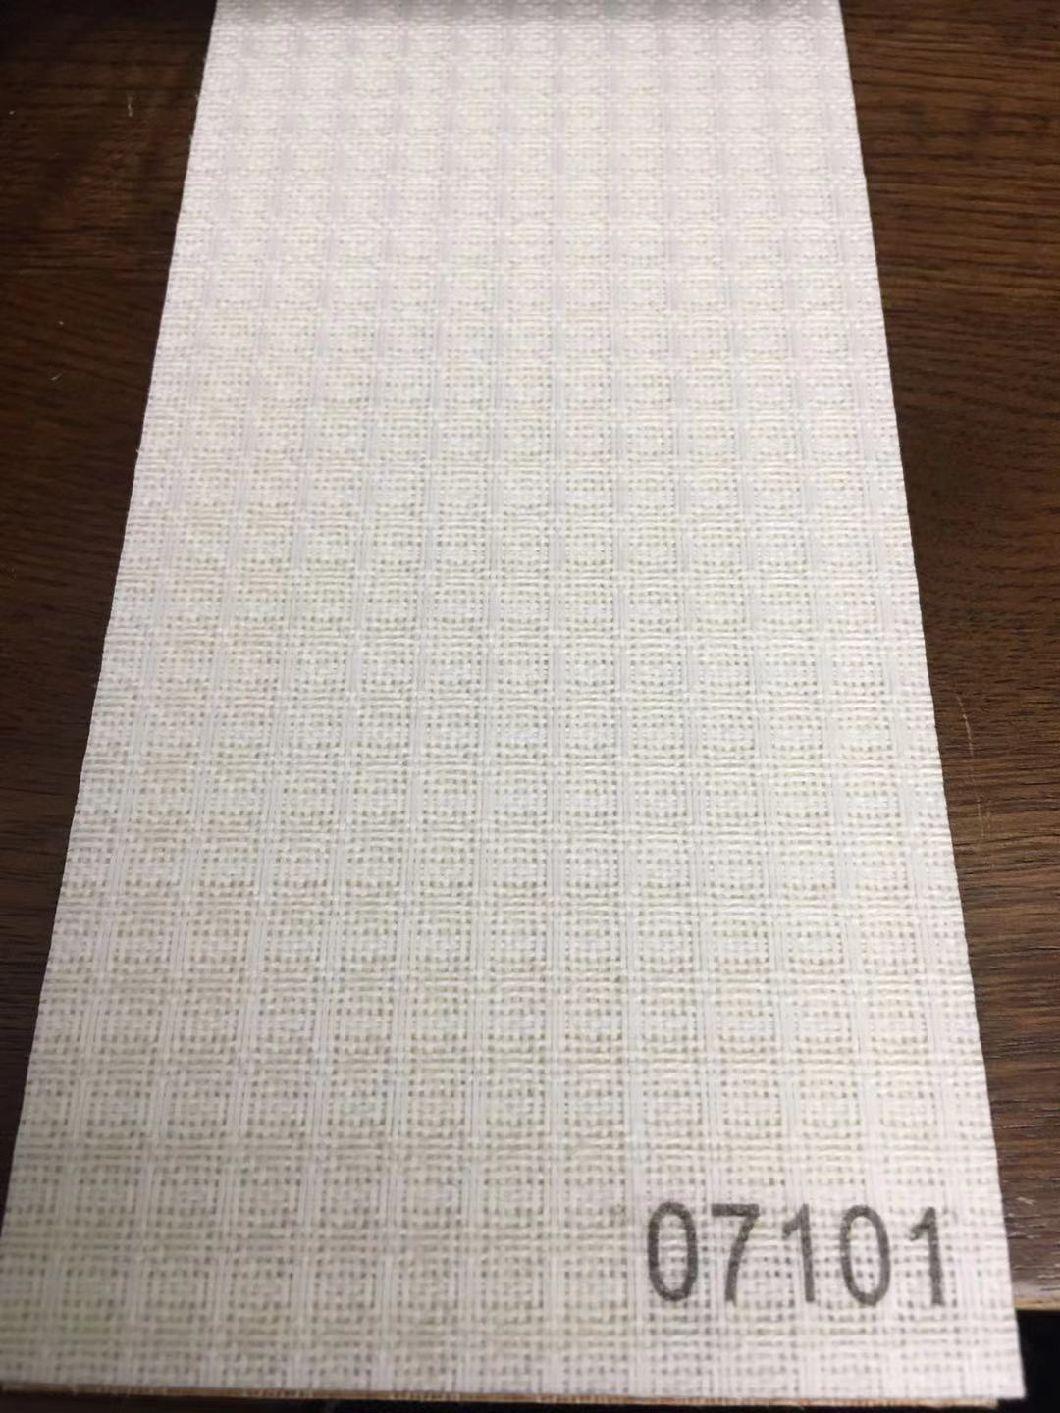 V21 Vertical Blinds Fabric